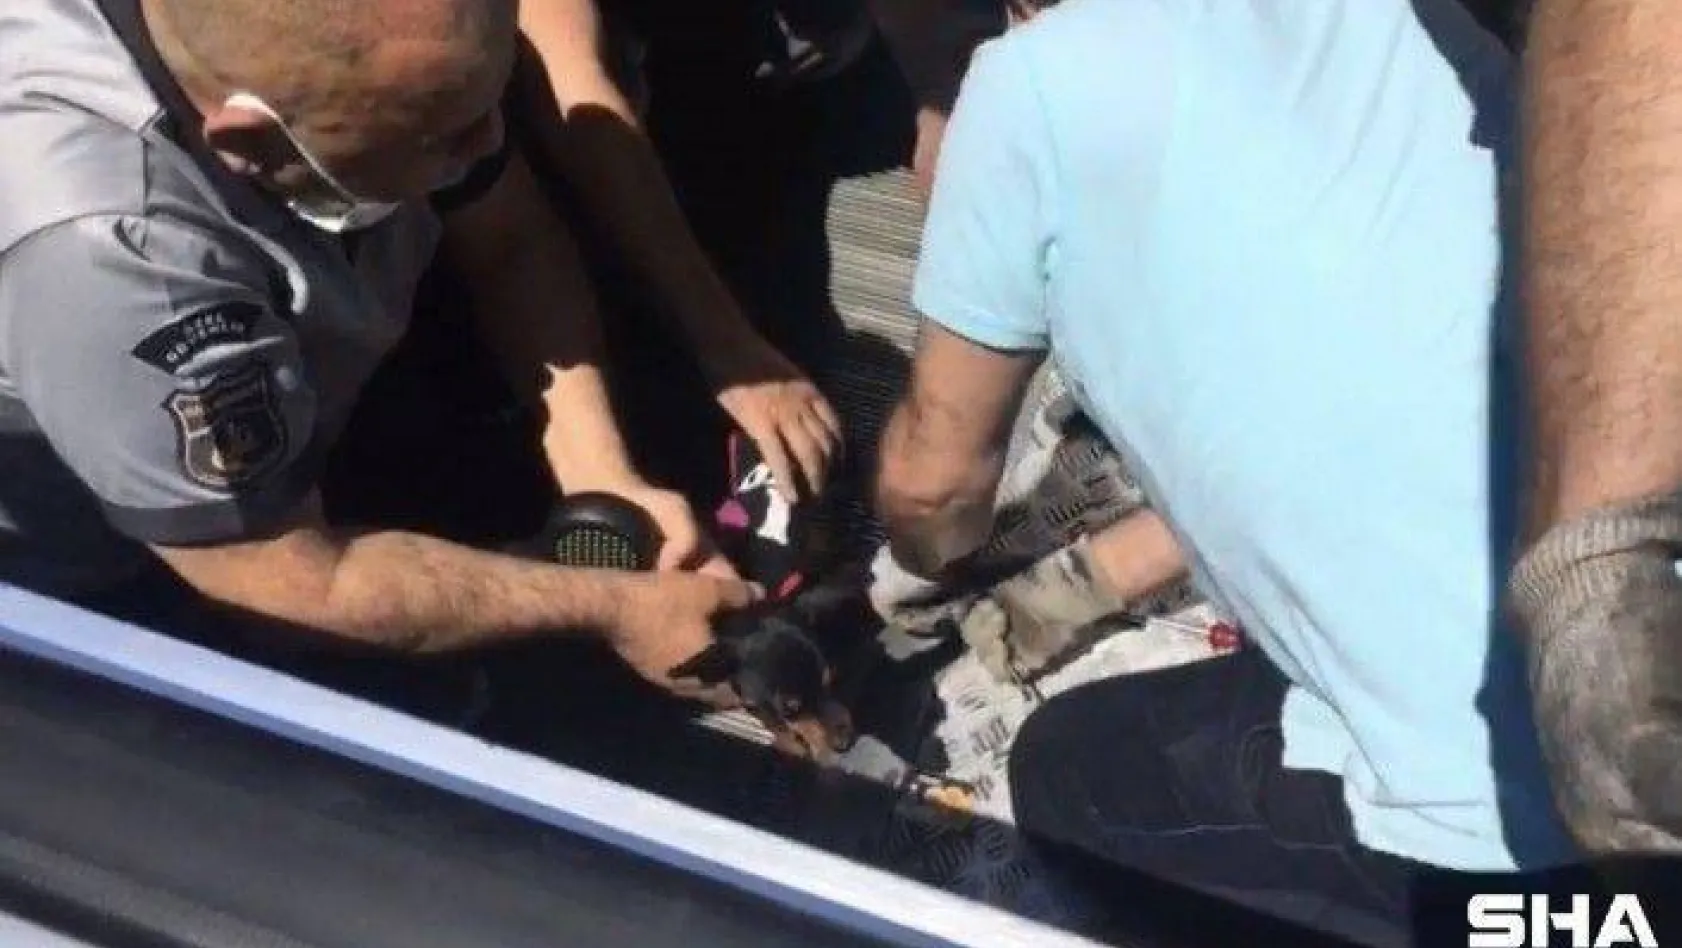 (ÖZEL) Şişli'de ayağı yürüyen merdivene sıkışan süs köpeğini kurtarma operasyonu